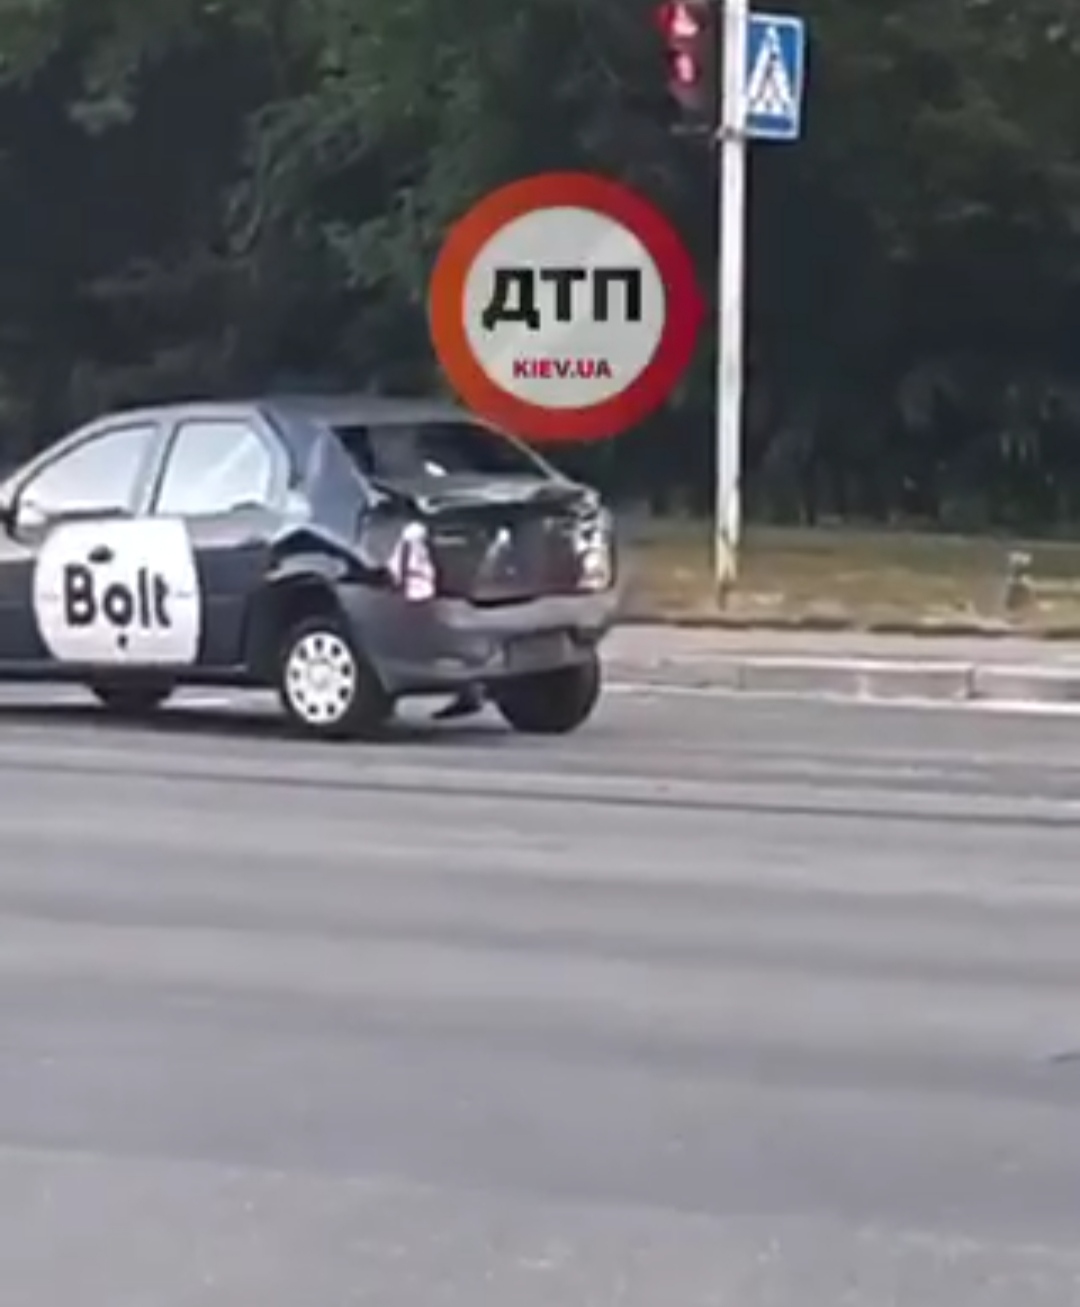 В Киеве на проспекте Лобановского произошло серьезное ДТП - грузовик врезался в автомобиль такси Bolt